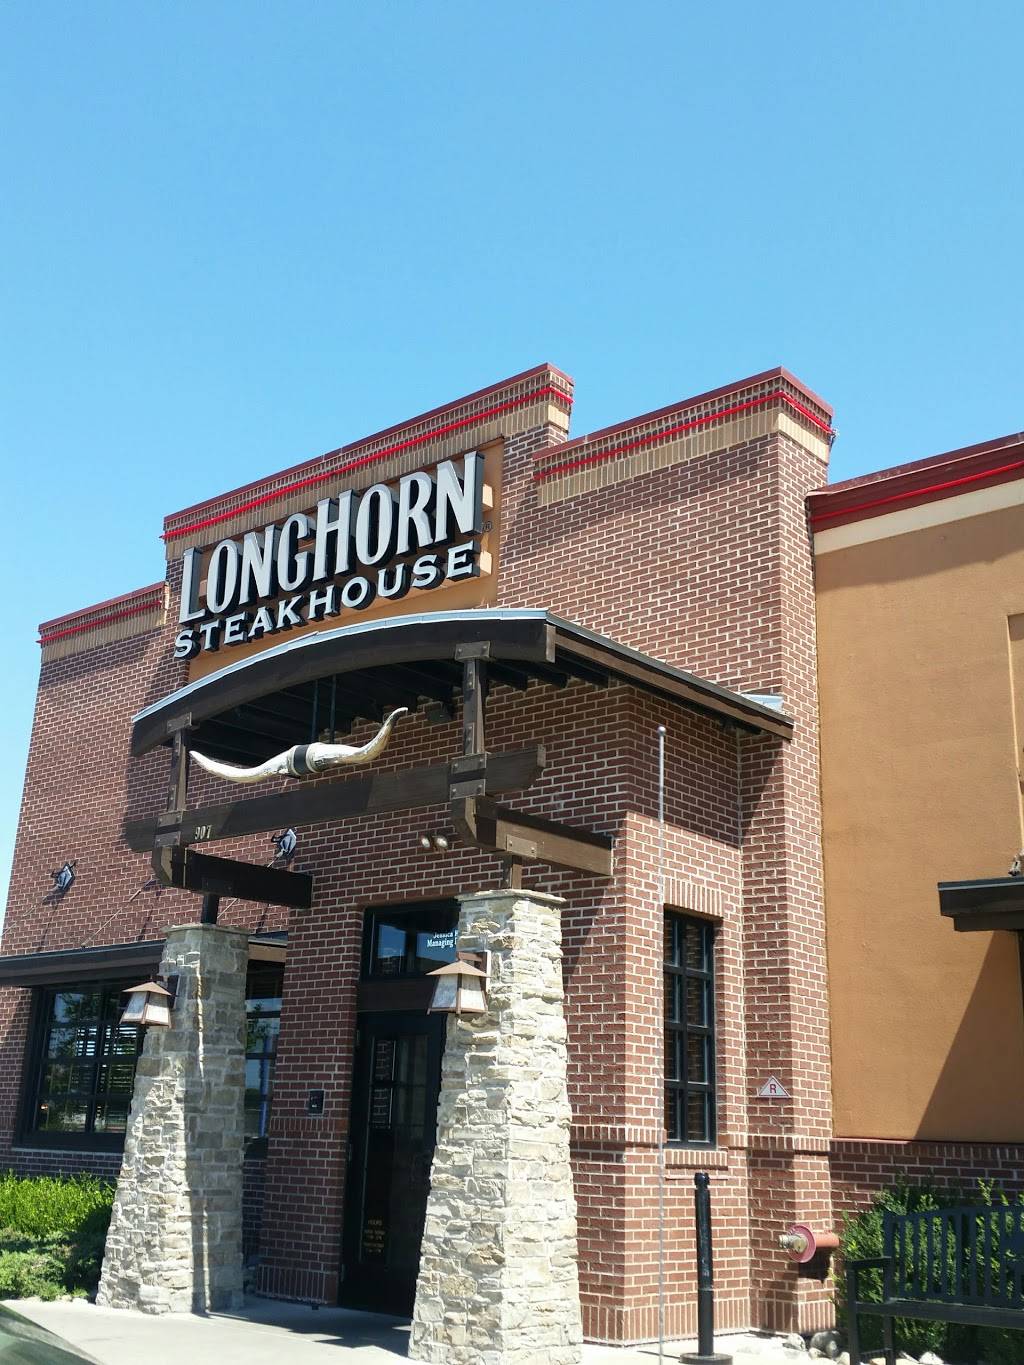 LongHorn Steakhouse | meal takeaway | 907 Bayonne Crossing Way, Bayonne, NJ 07002, USA | 2018580976 OR +1 201-858-0976